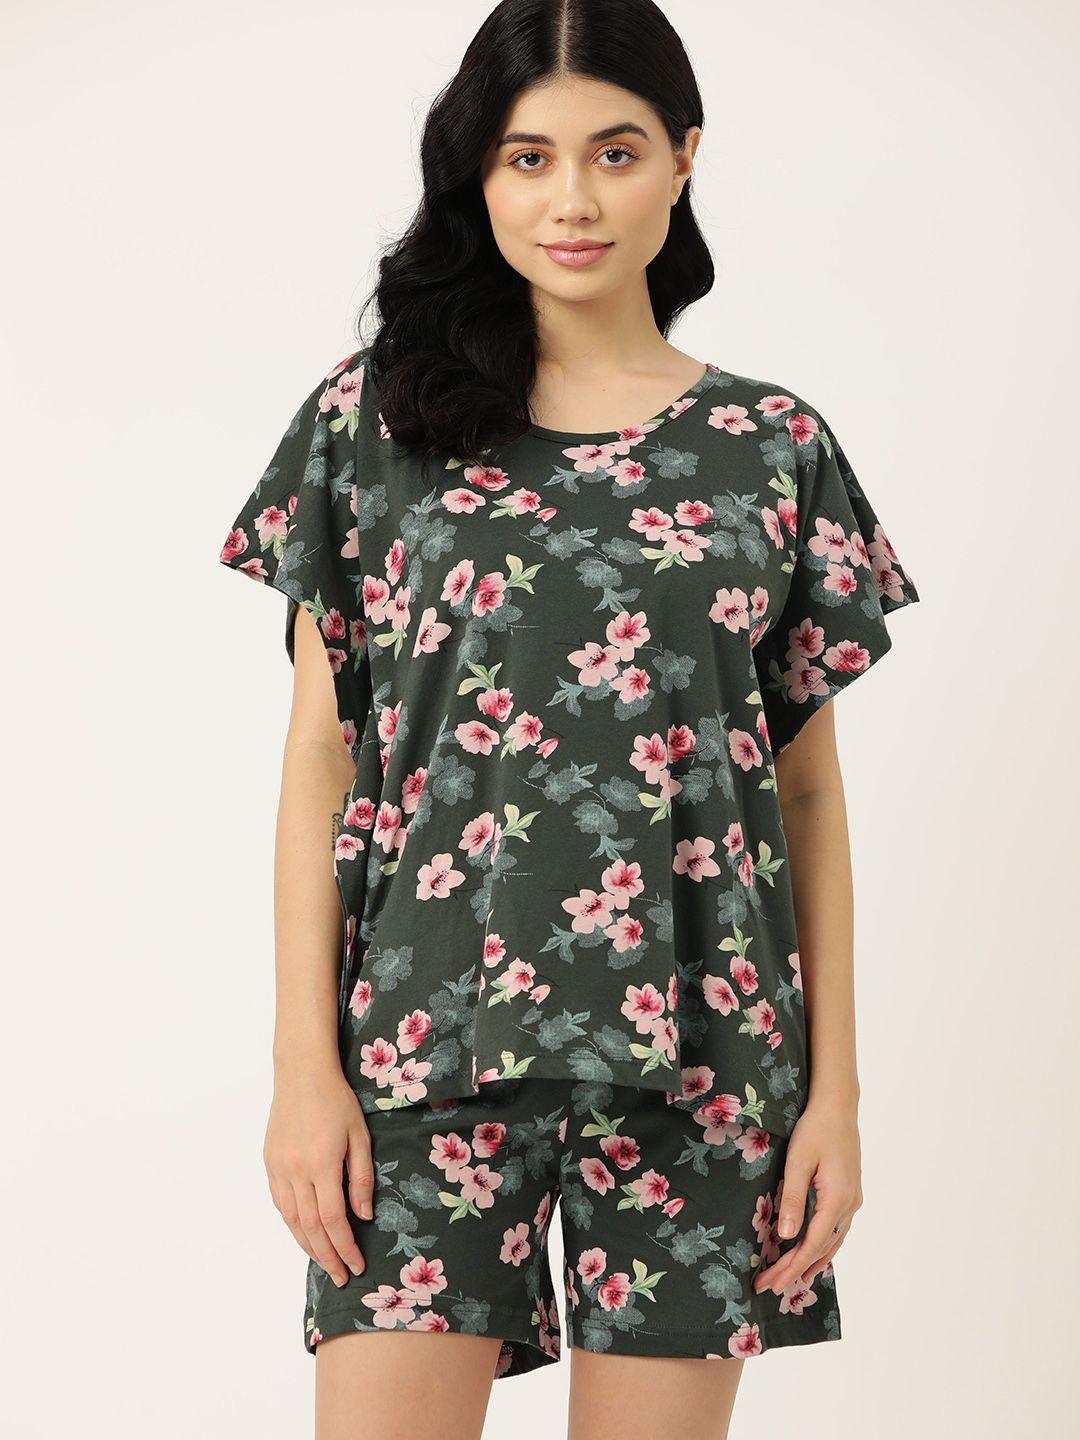 etc pure cotton floral print shorts set